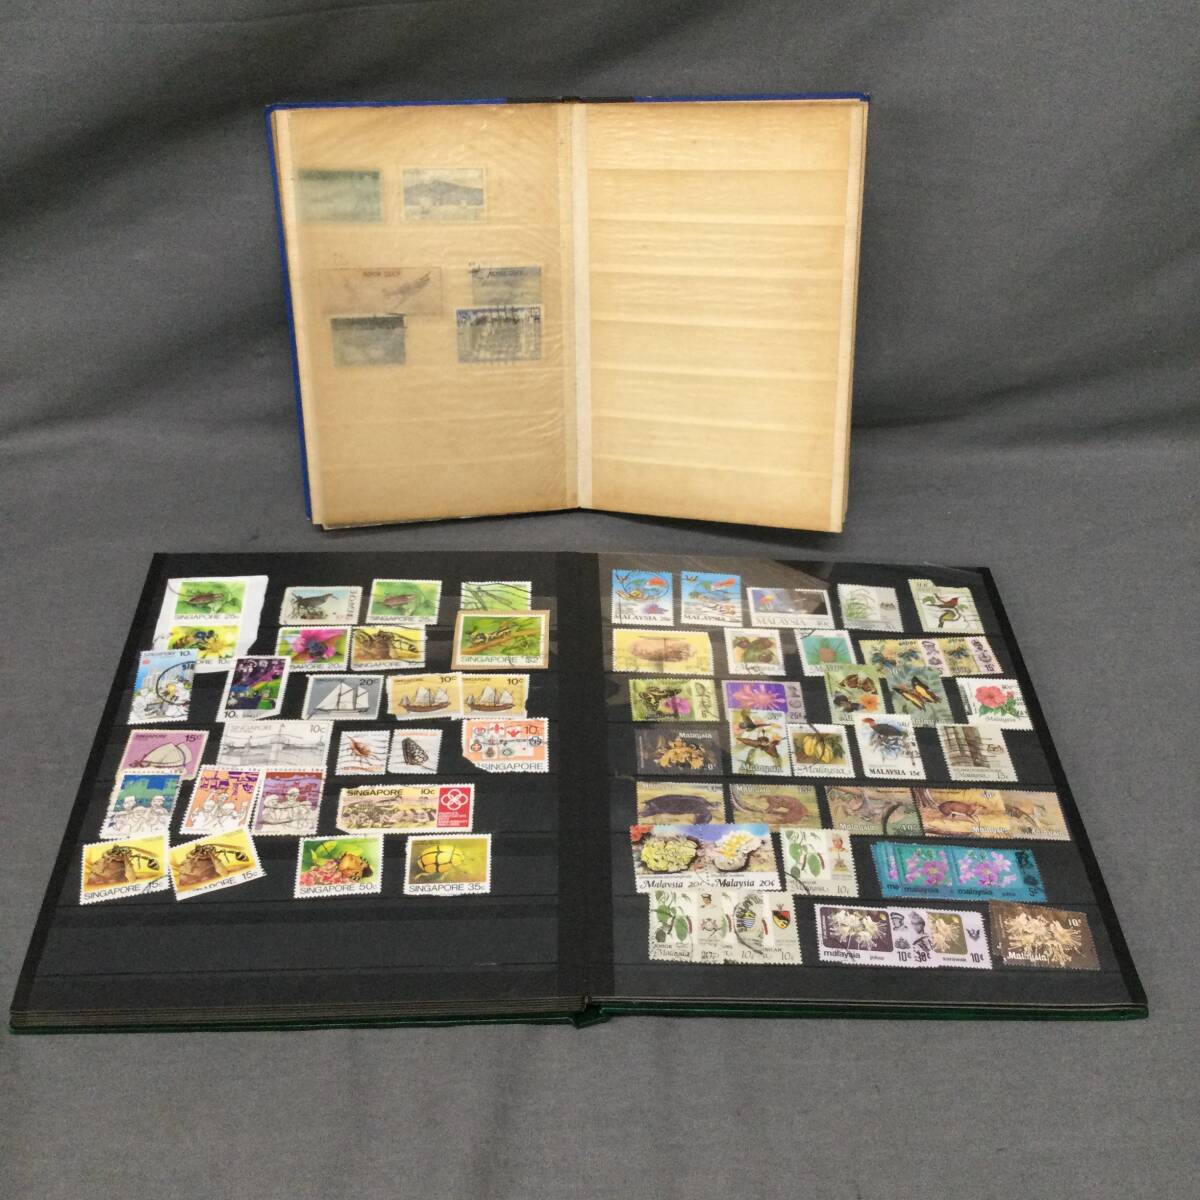 060422 GZ-04400 海外切手 人物 動物 植物 建物 未使用・使用済みいろいろセット アルバム コレクション ホビー 収集  の画像6